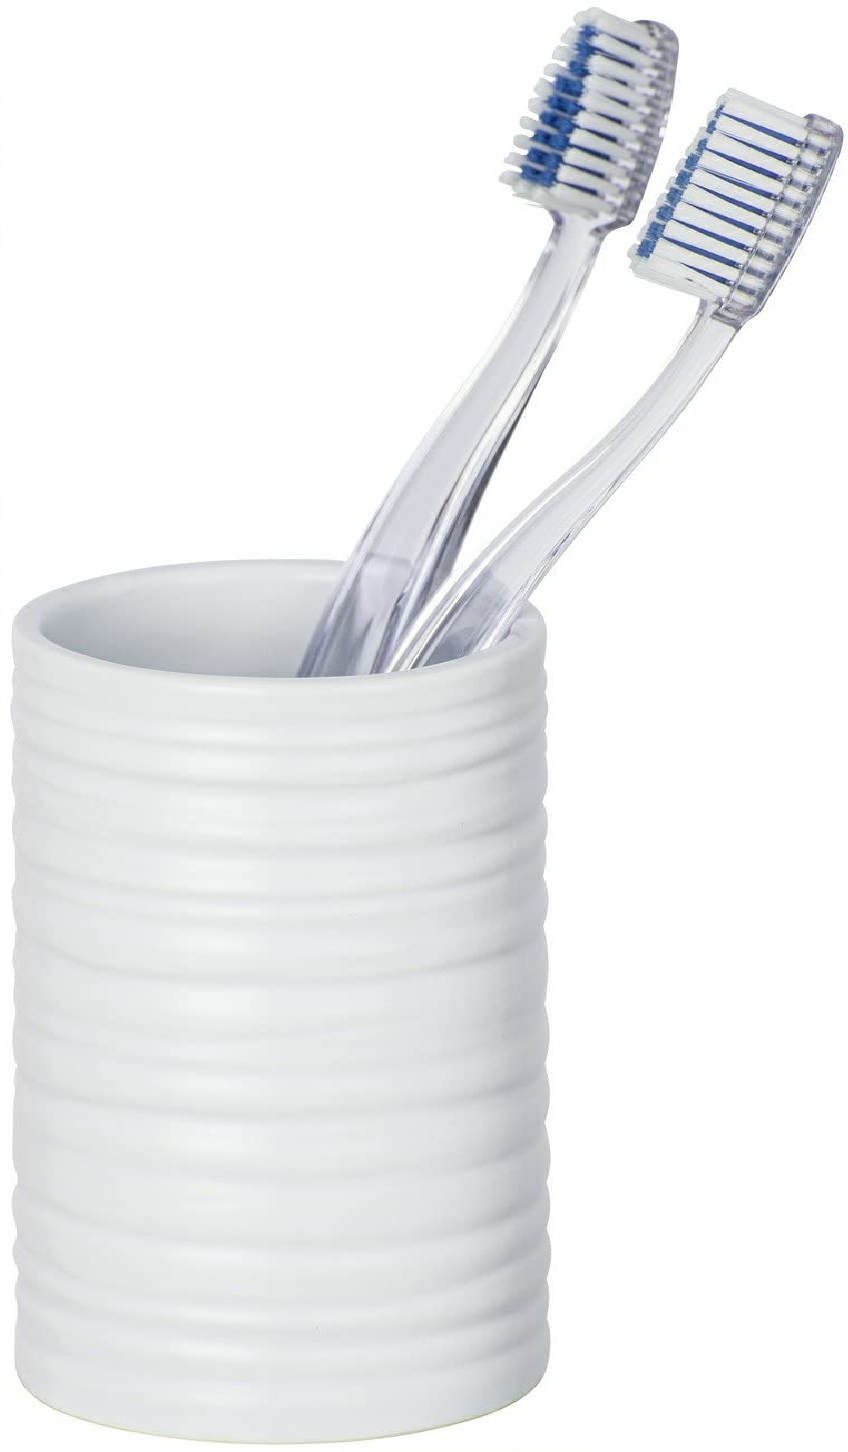 Zahnputzbecher Mila Weiß Keramik - Zahnbürstenhalter für Zahnbürste und Zahnpasta, Keramik, 6.5 x 10.5 x 6.5 cm, Weiß